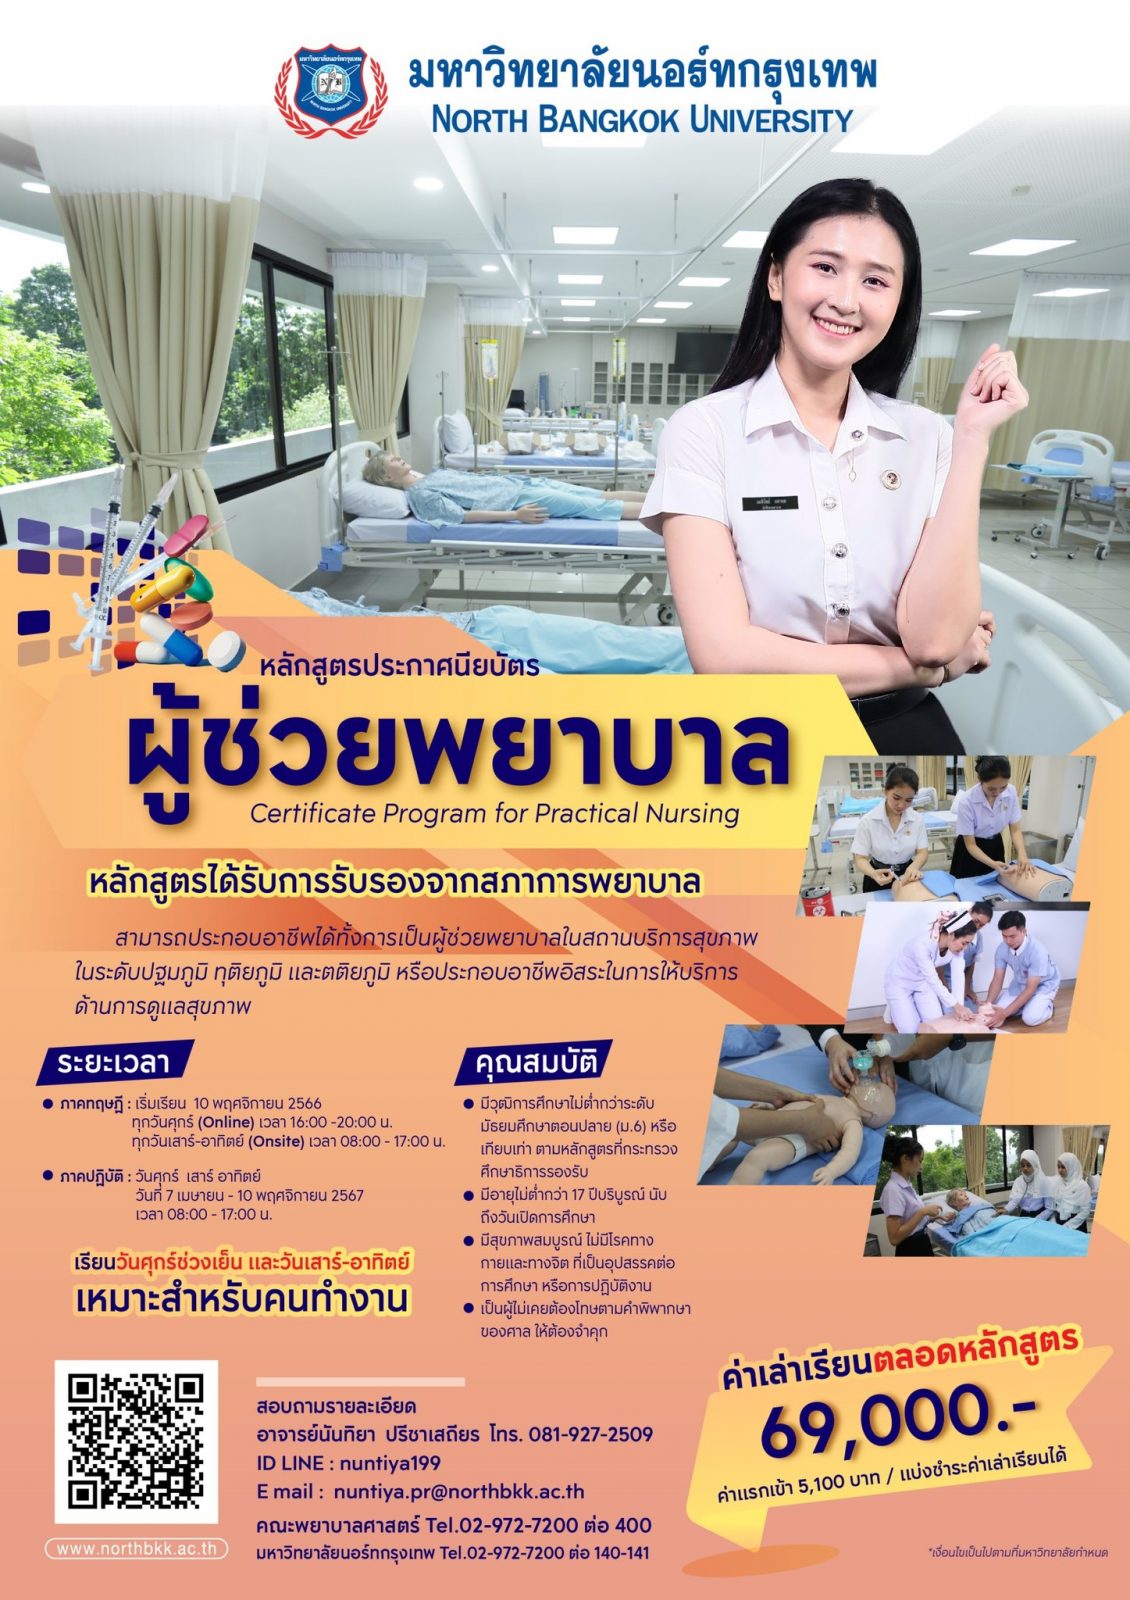 คณะพยาบาลศาสตร์ เปิดรับสมัครนักศึกษาใหม่ หลักสูตรประกาศนียบัตรผู้ช่วยพยาบาล ปีการศึกษา 2566 (แผนการเรียนที่ 2/2566)